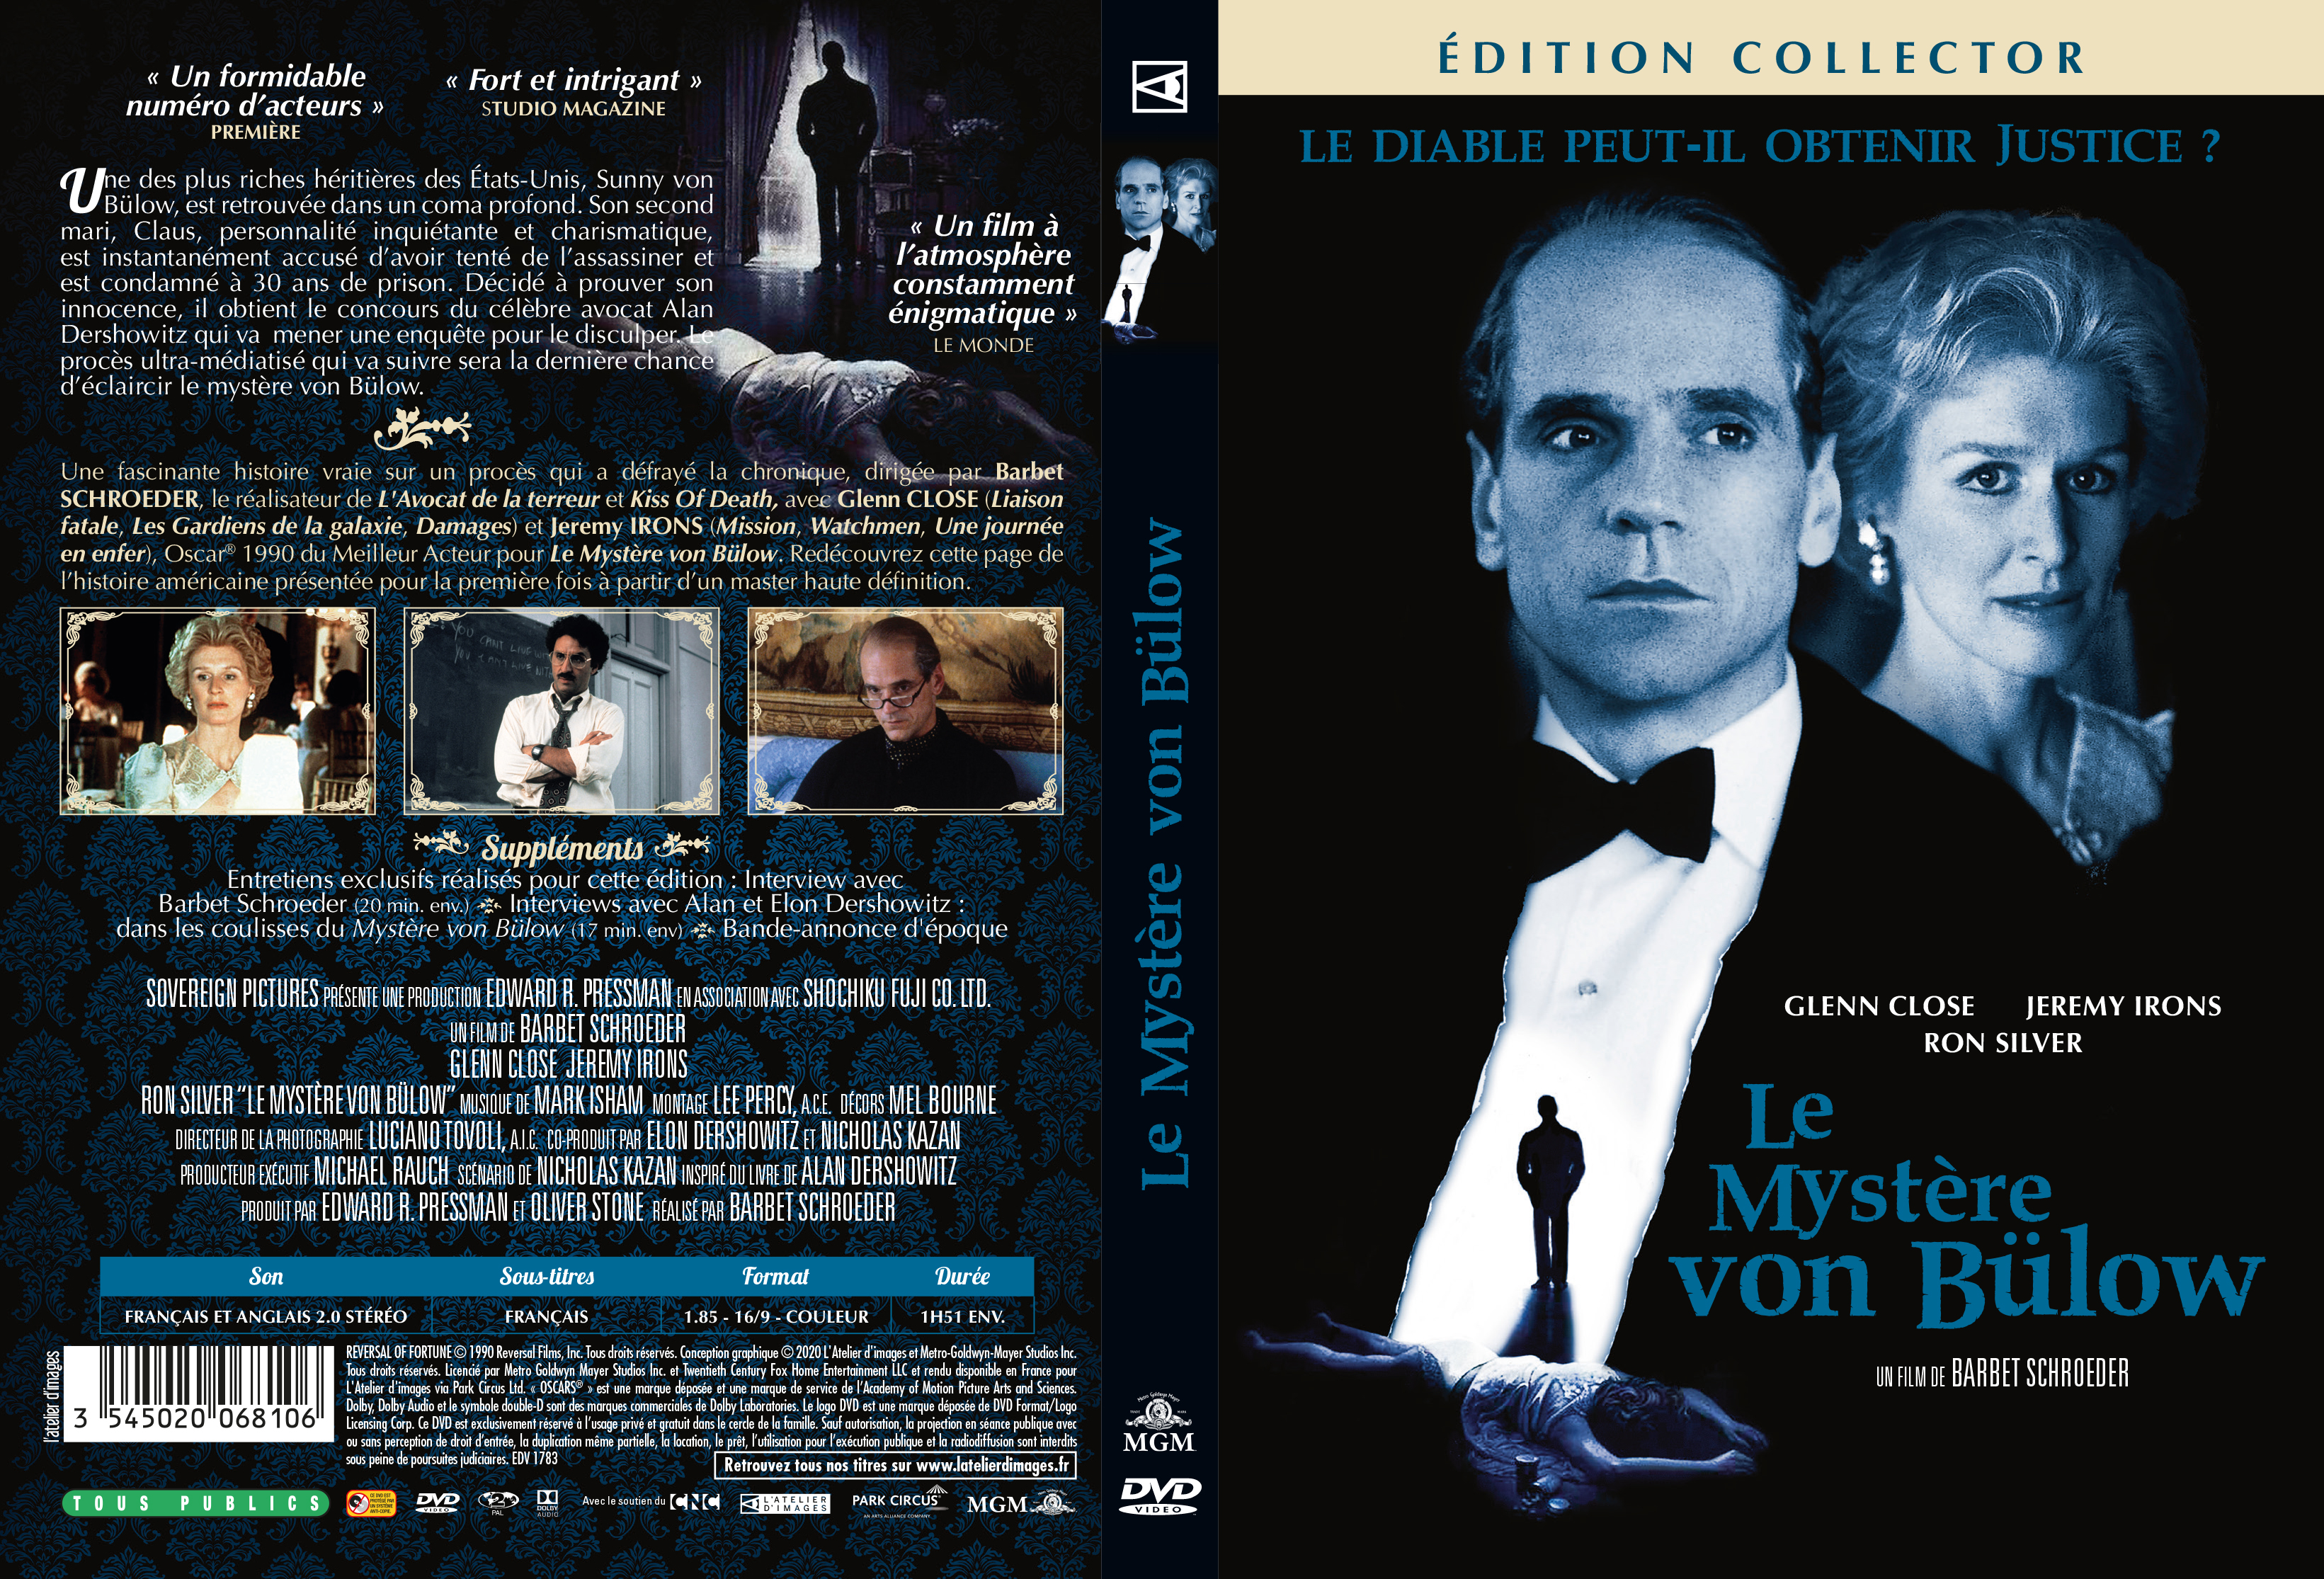 Jaquette DVD Le mystere Von Bulow v2